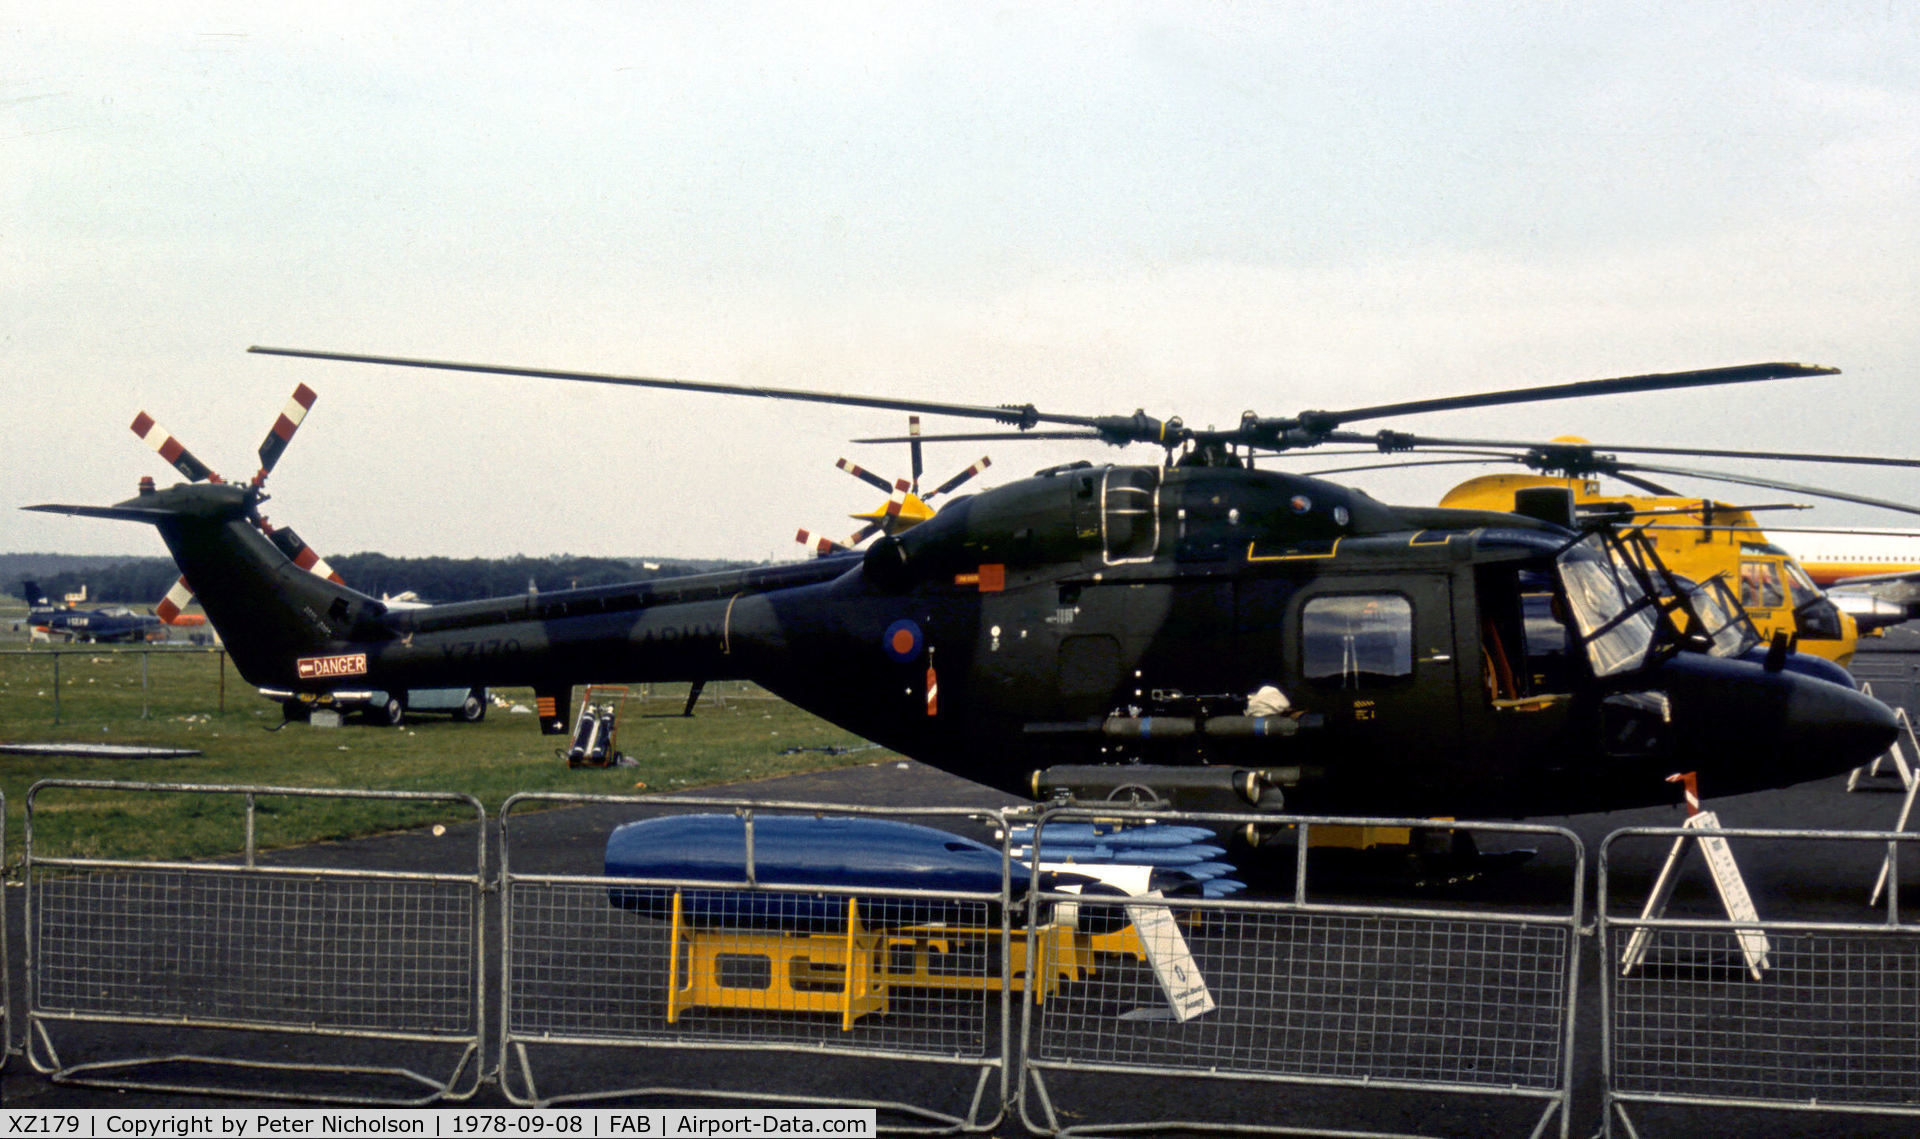 XZ179, 1978 Westland Lynx AH.1 C/N 047, Lynx AH.1 on display at the 1978 SBAC Farnborough Airshow.